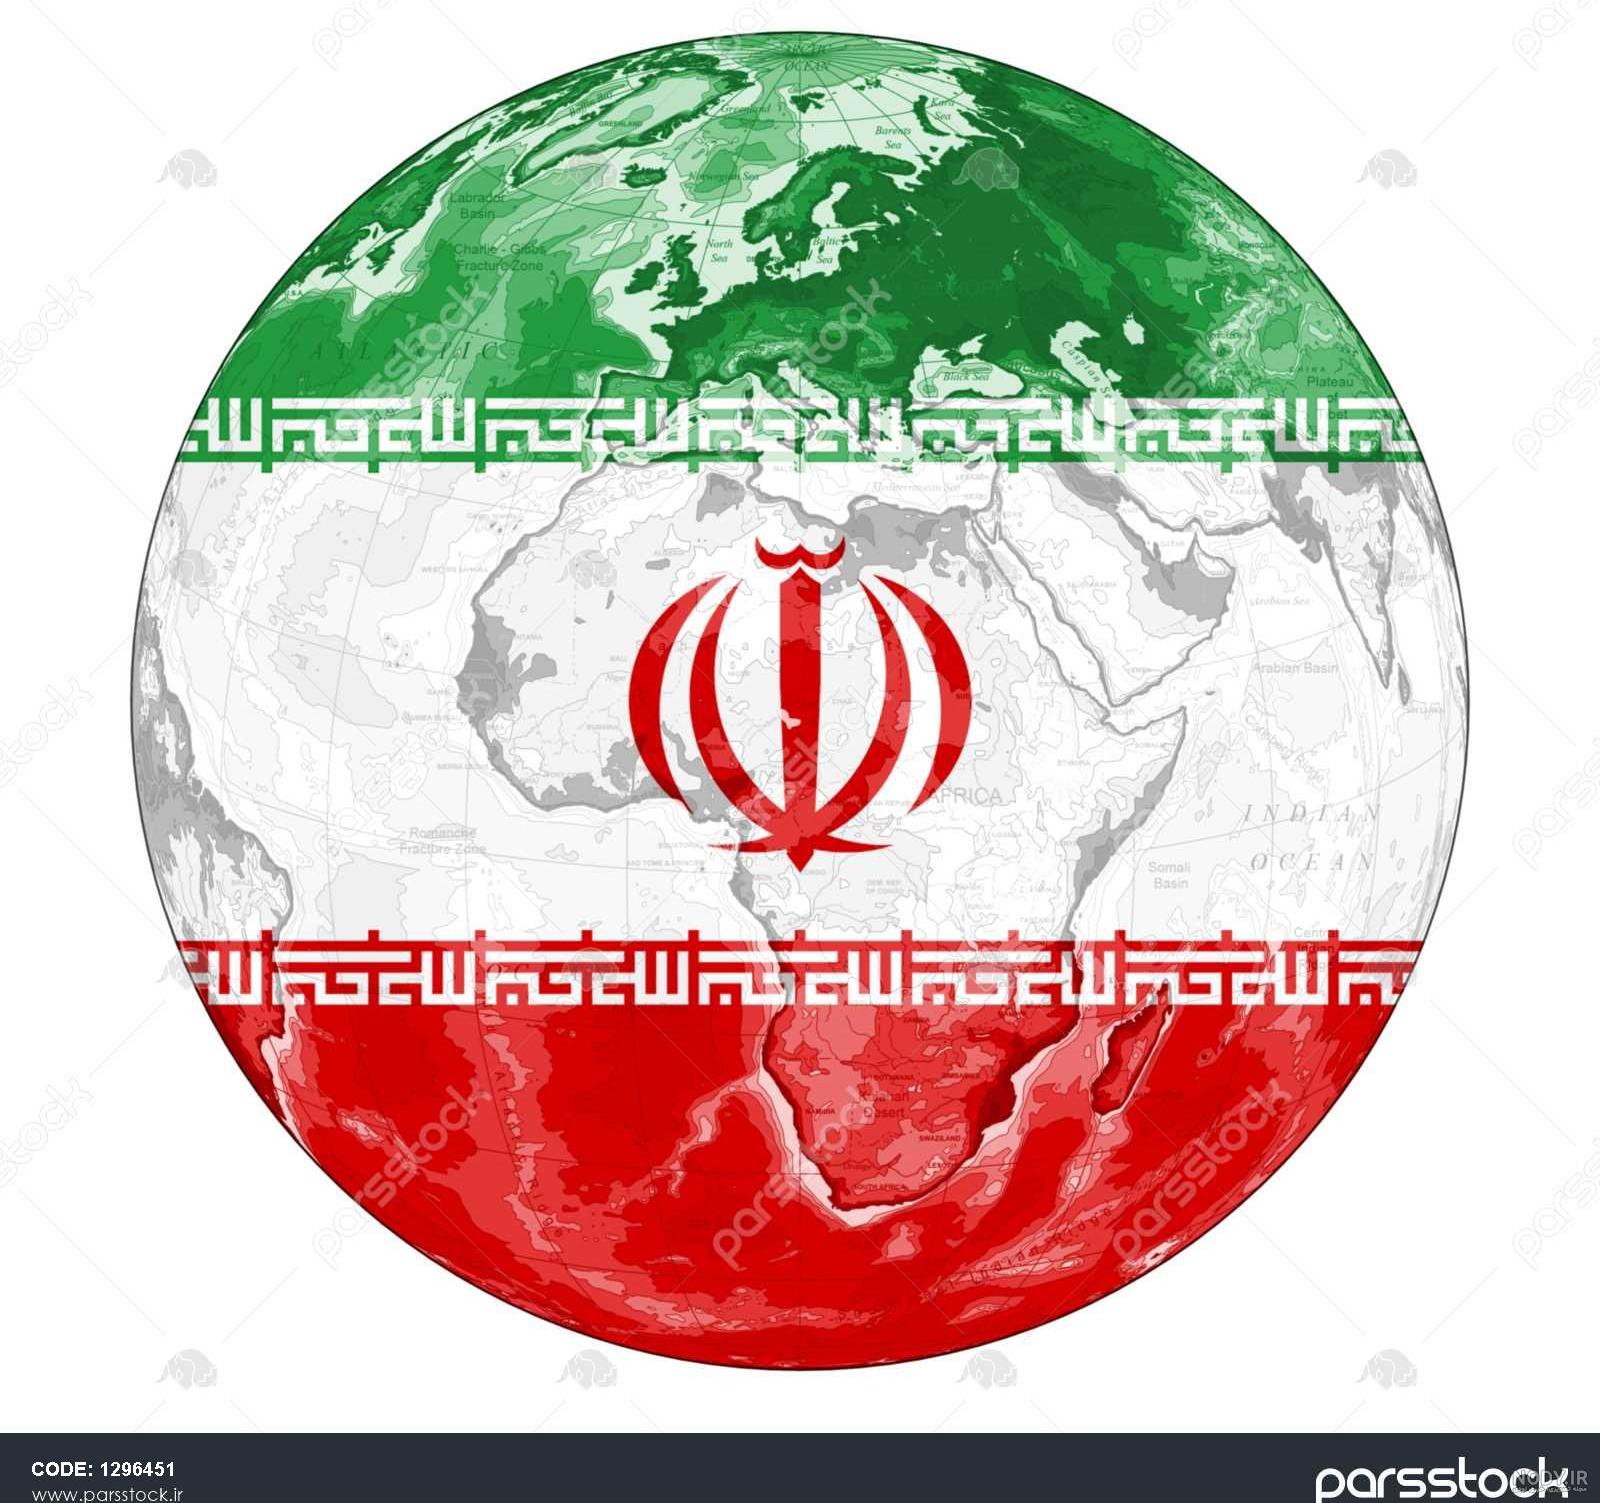 عکس نقشه ایران با رنگ پرچم